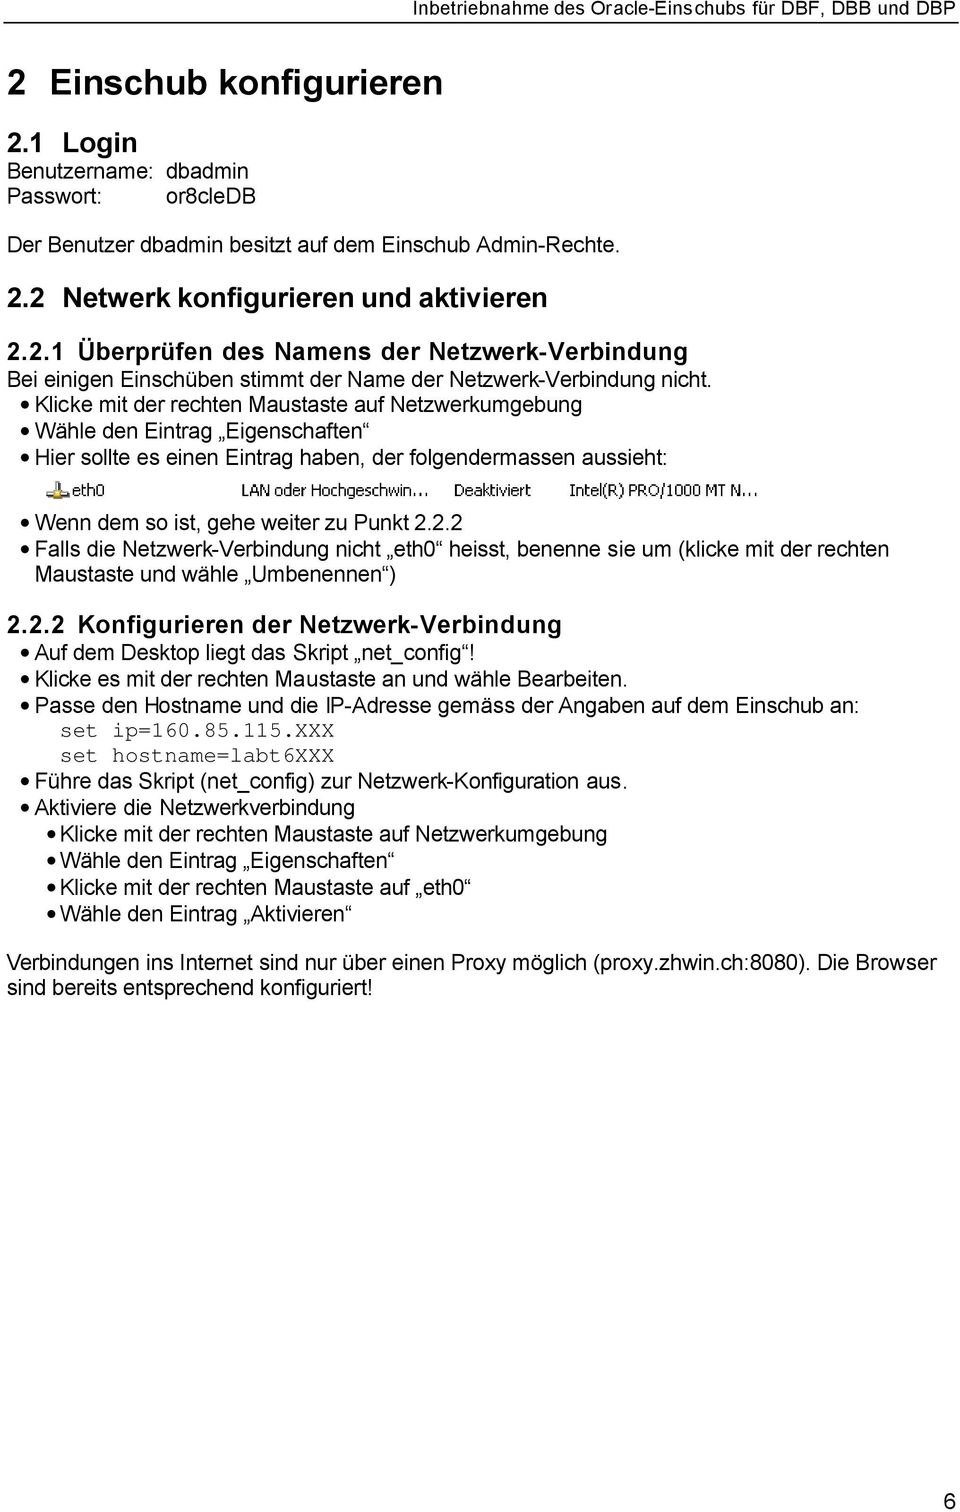 2.2 Falls die Netzwerk-Verbindung nicht eth0 heisst, benenne sie um (klicke mit der rechten Maustaste und wähle Umbenennen ) 2.2.2 Konfigurieren der Netzwerk-Verbindung Auf dem Desktop liegt das Skript net_config!